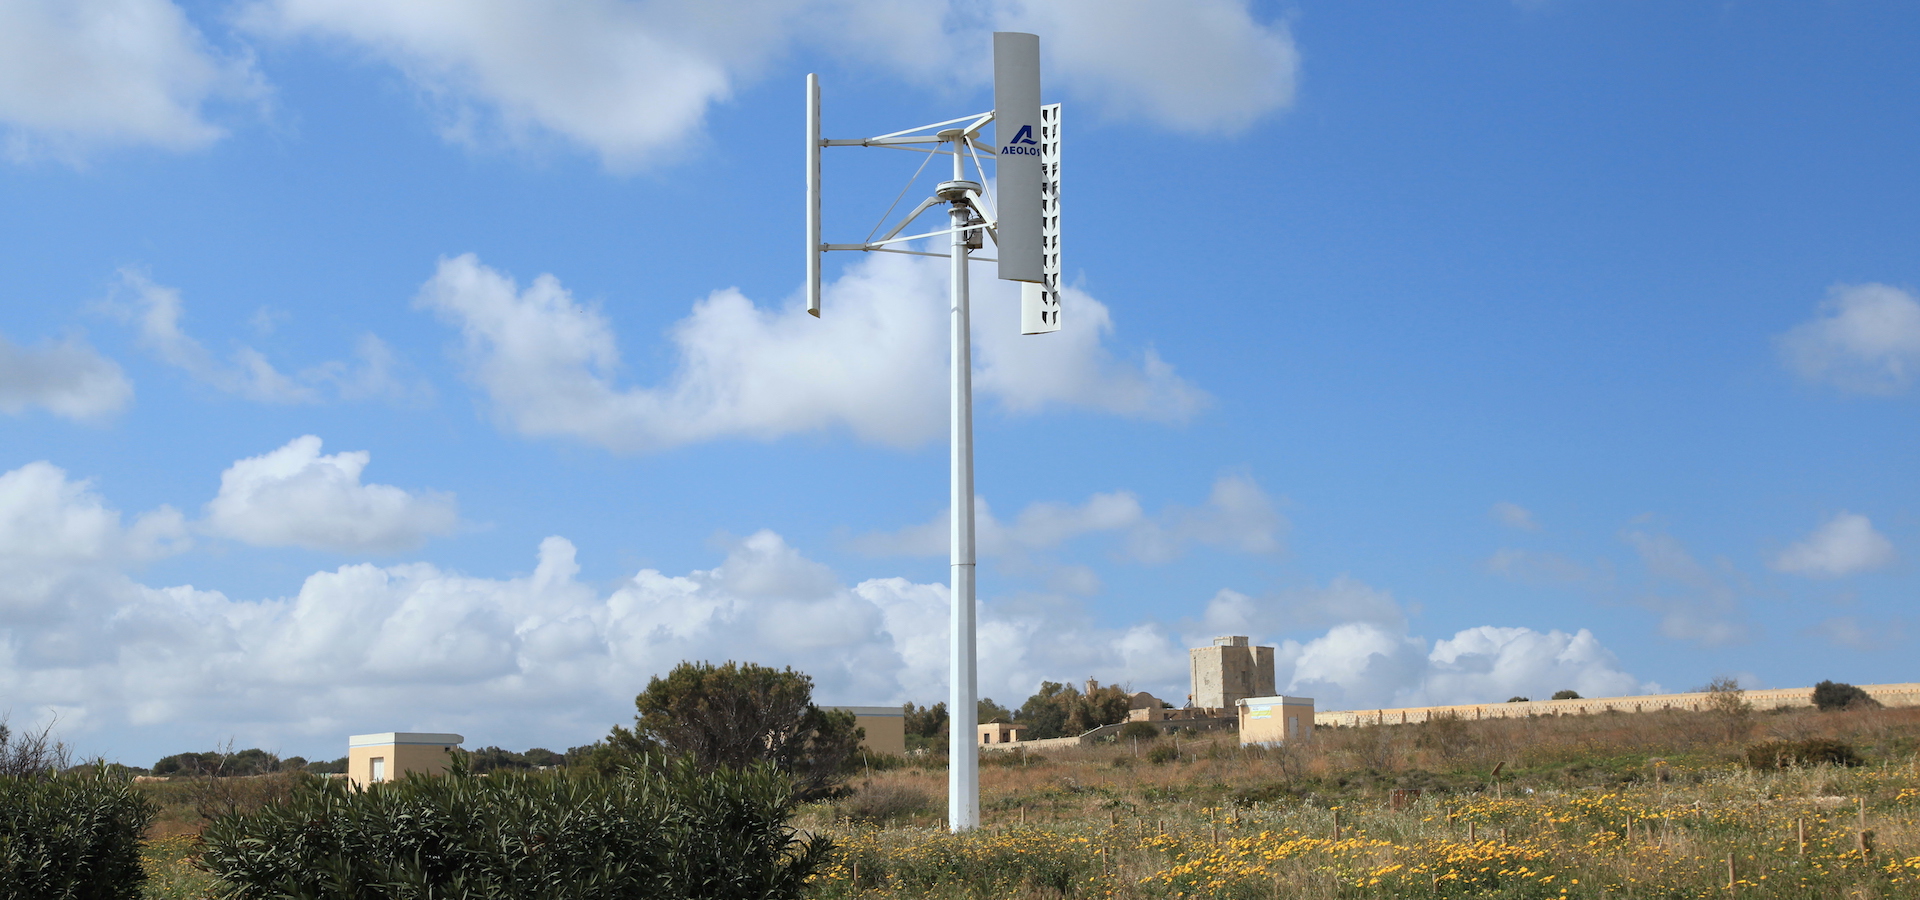 windmill in a field in Malta